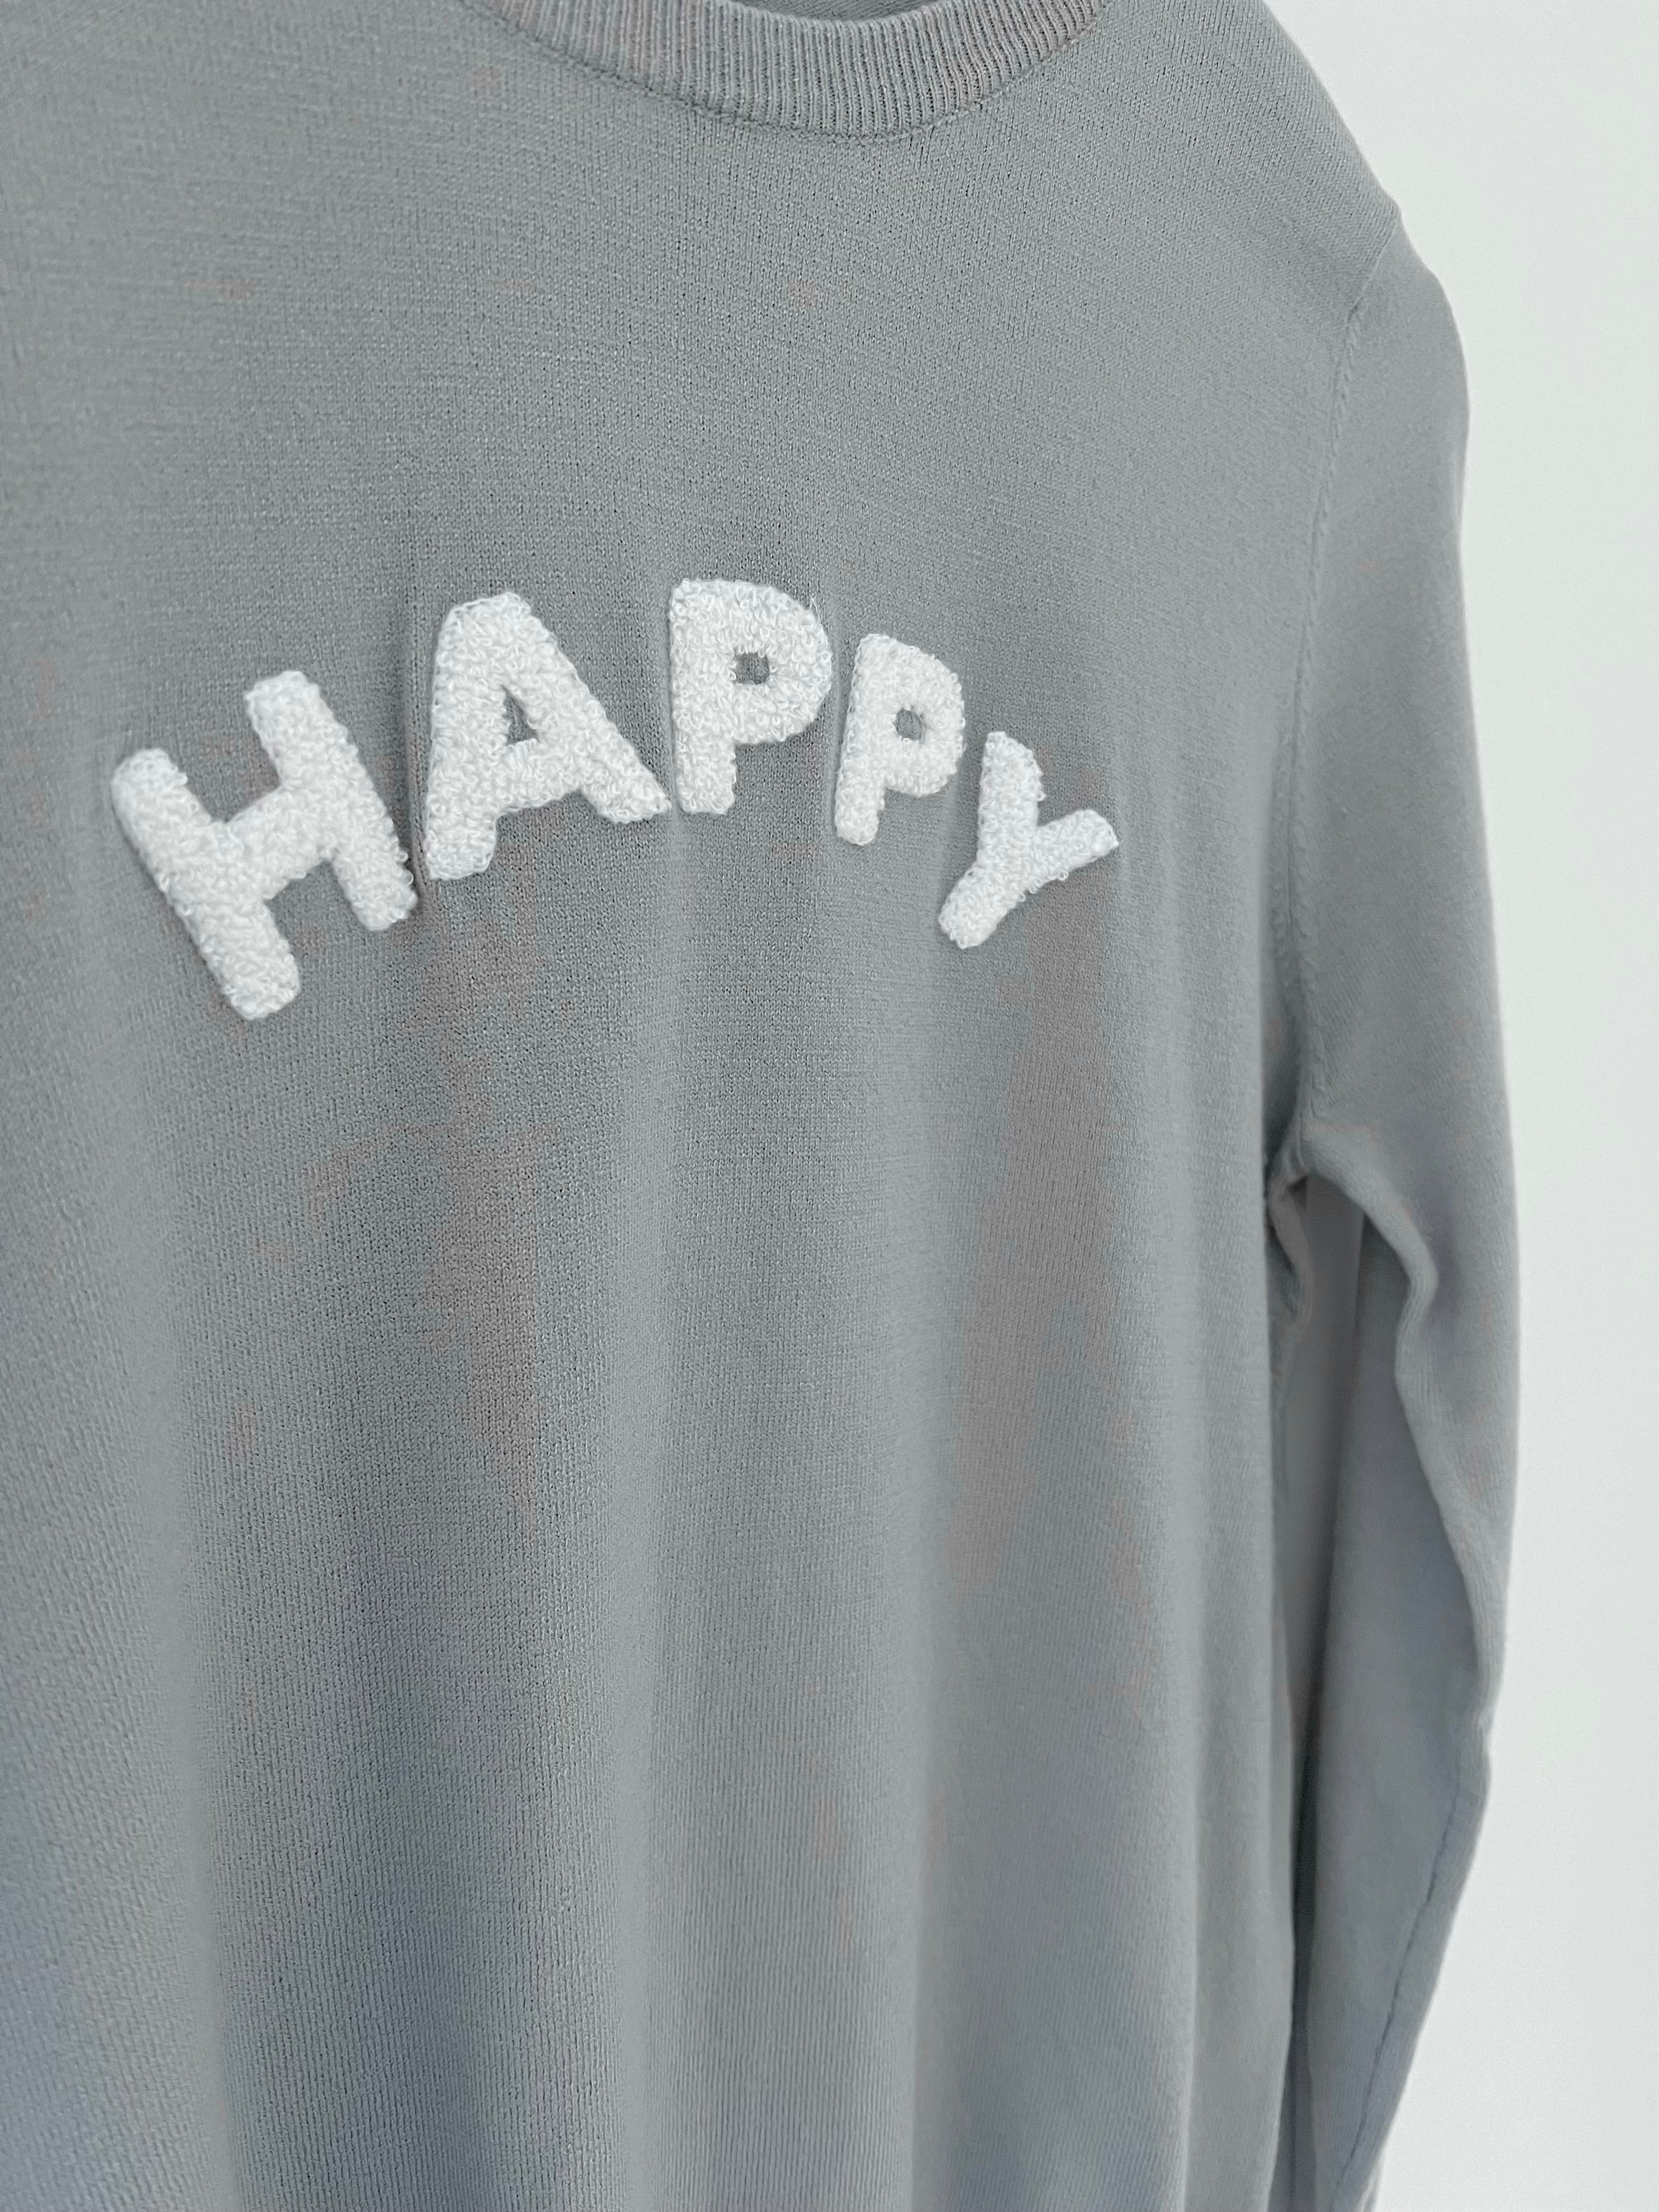 Happy Jumper in Grey